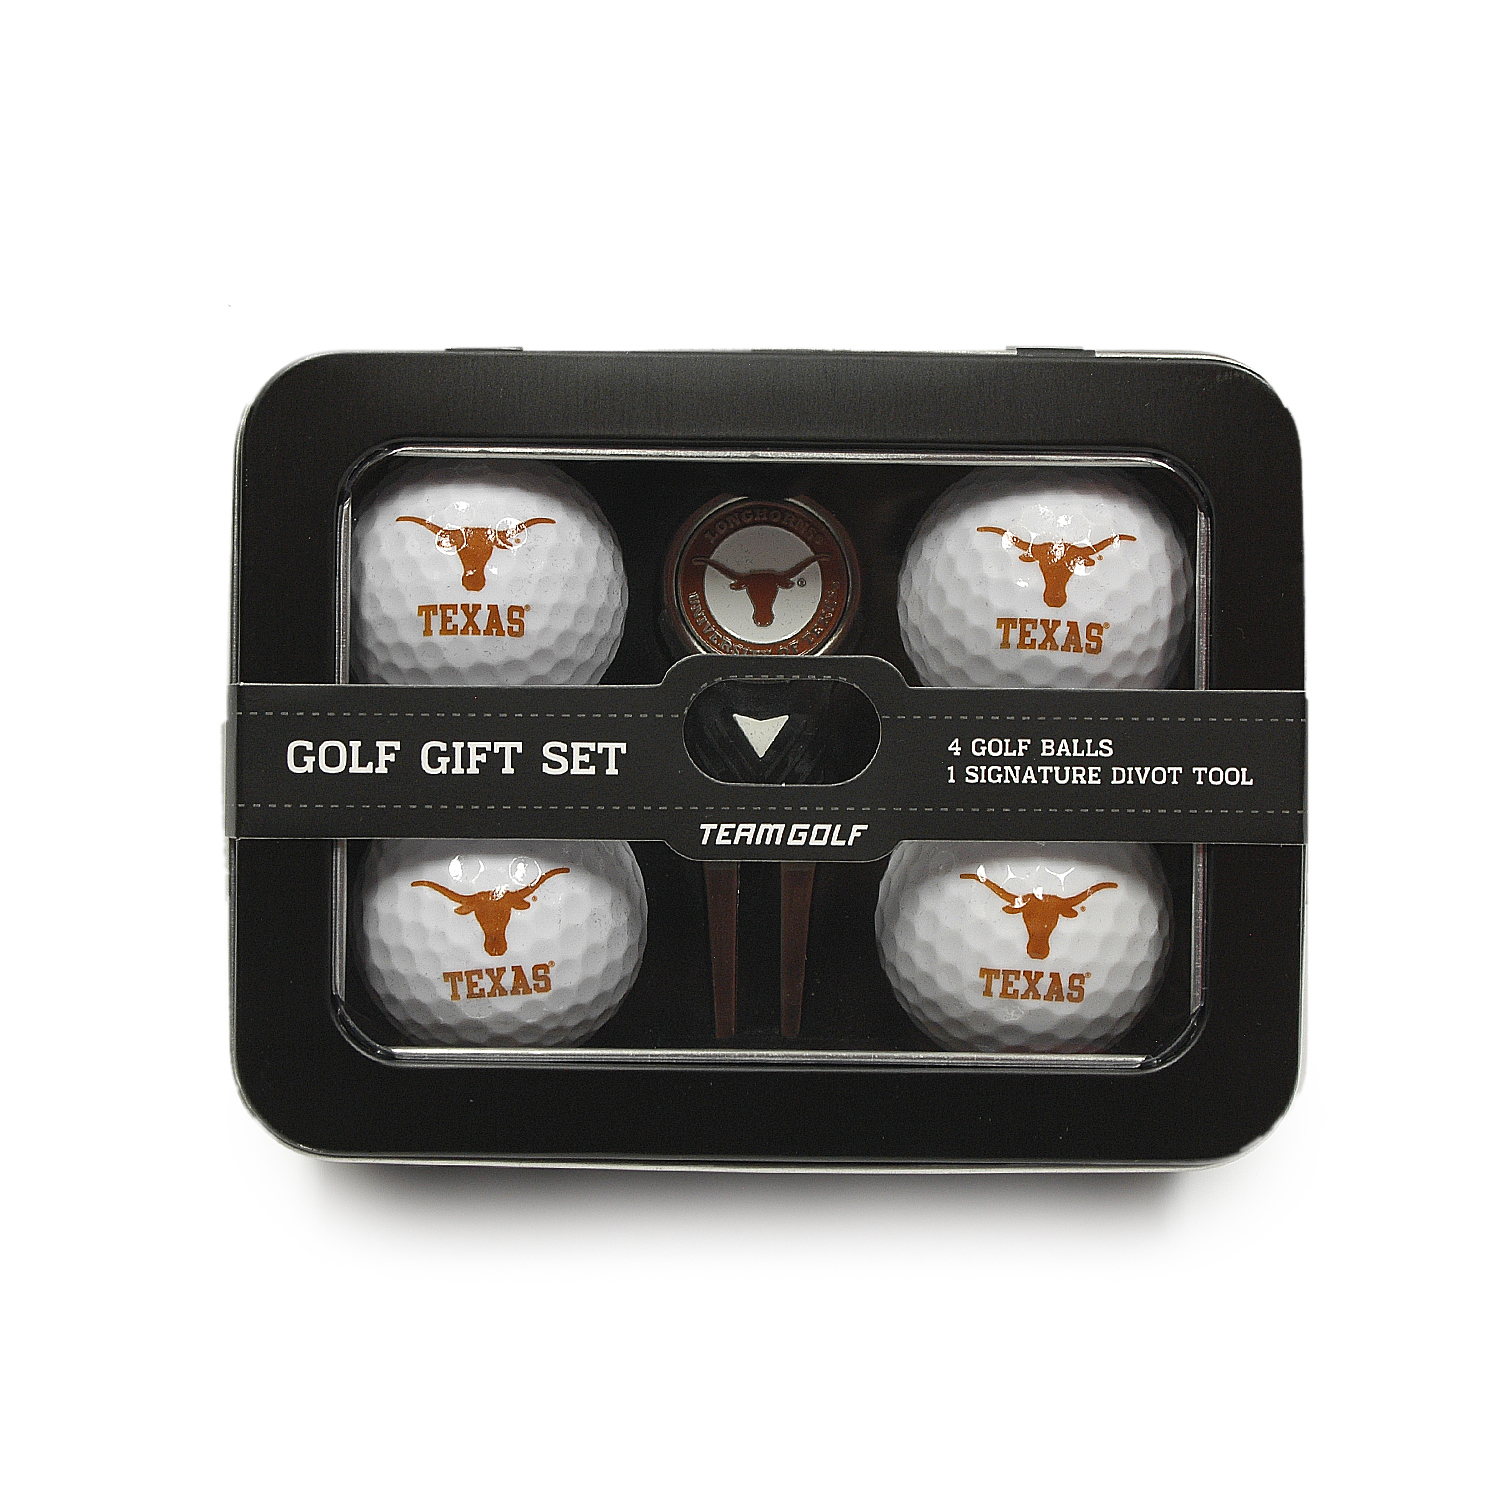 Texas 4 Golf Ball And Divot Tool Set